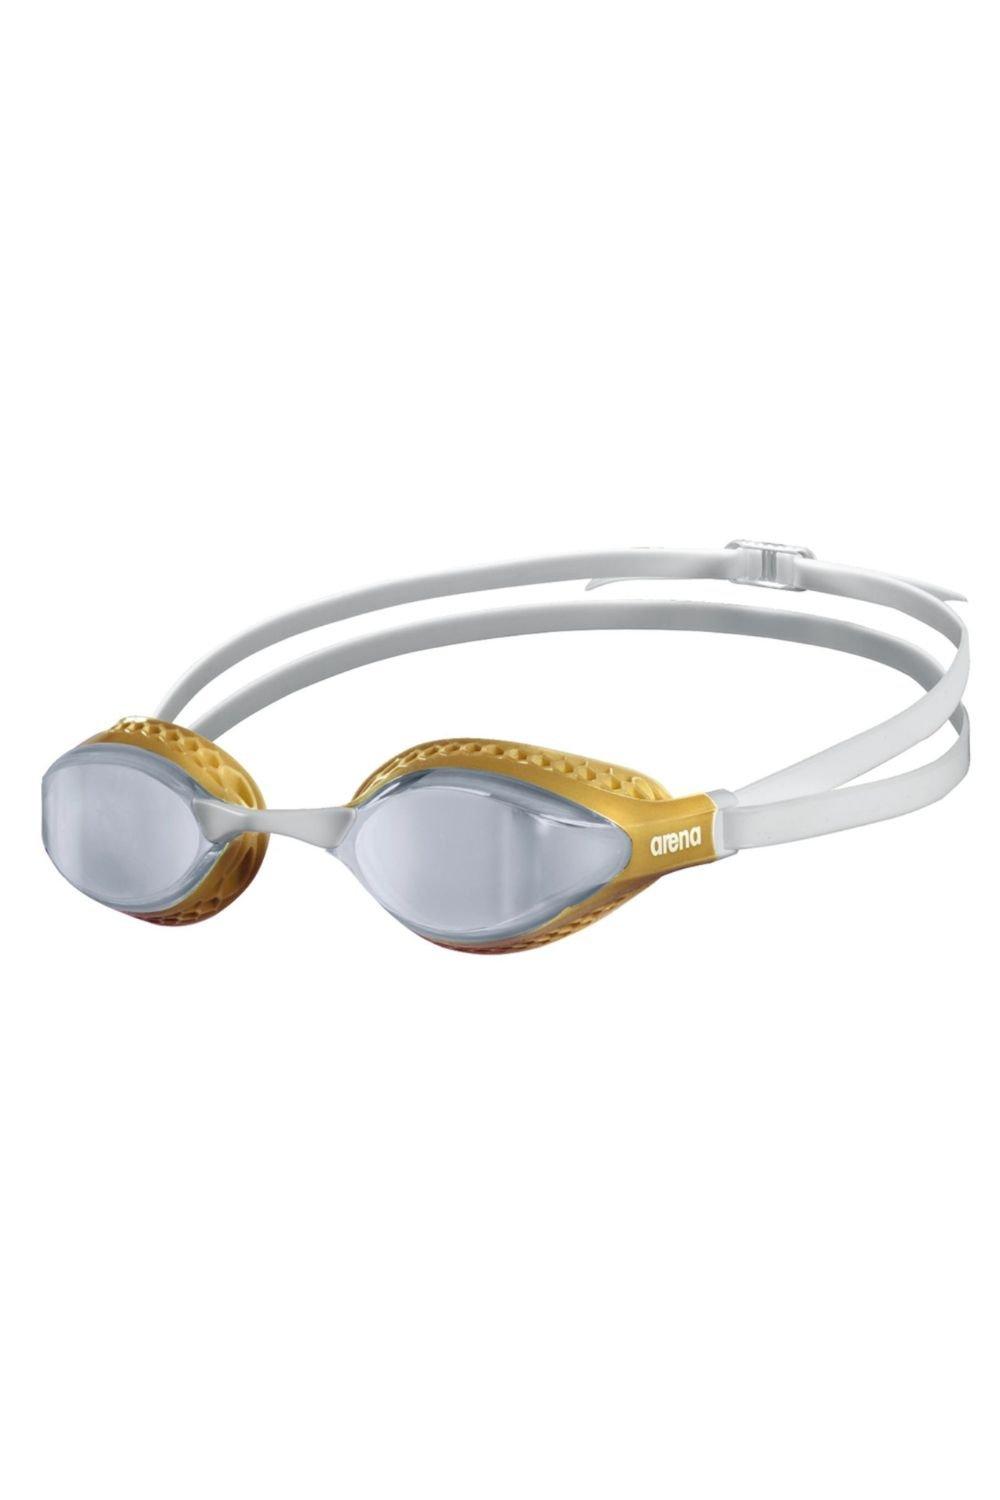 Очки для плавания с зеркалом Airspeed Arena, золото очки для плавания nike legacy mirror nessd130931 зеркальные линзы fina approved senior